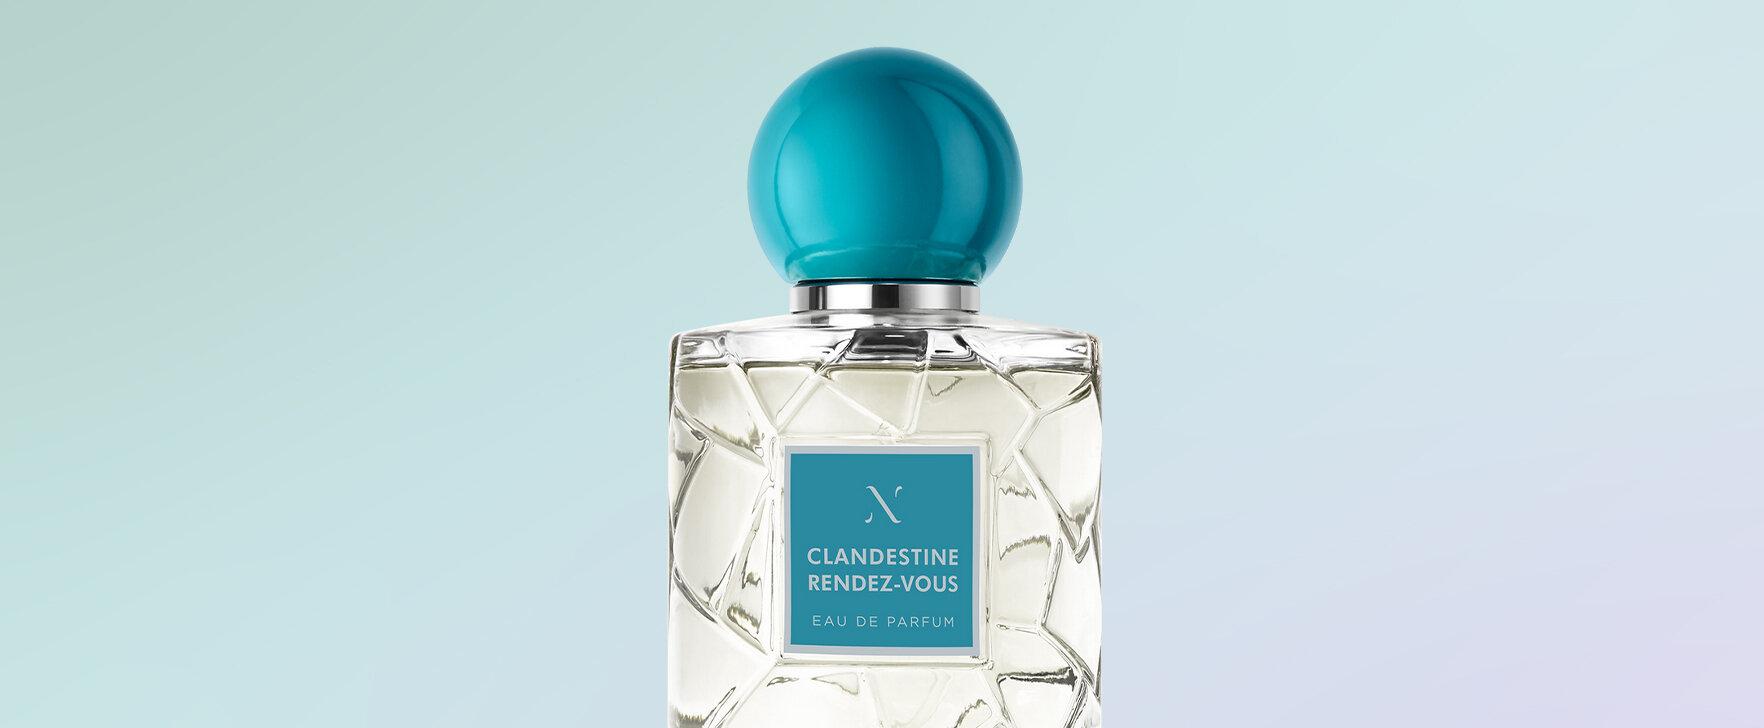 The Essence of a Parisian Love Affair: The New Eau de Parfum "Clandestine Rendez-Vous" by Les Sœurs de Noé